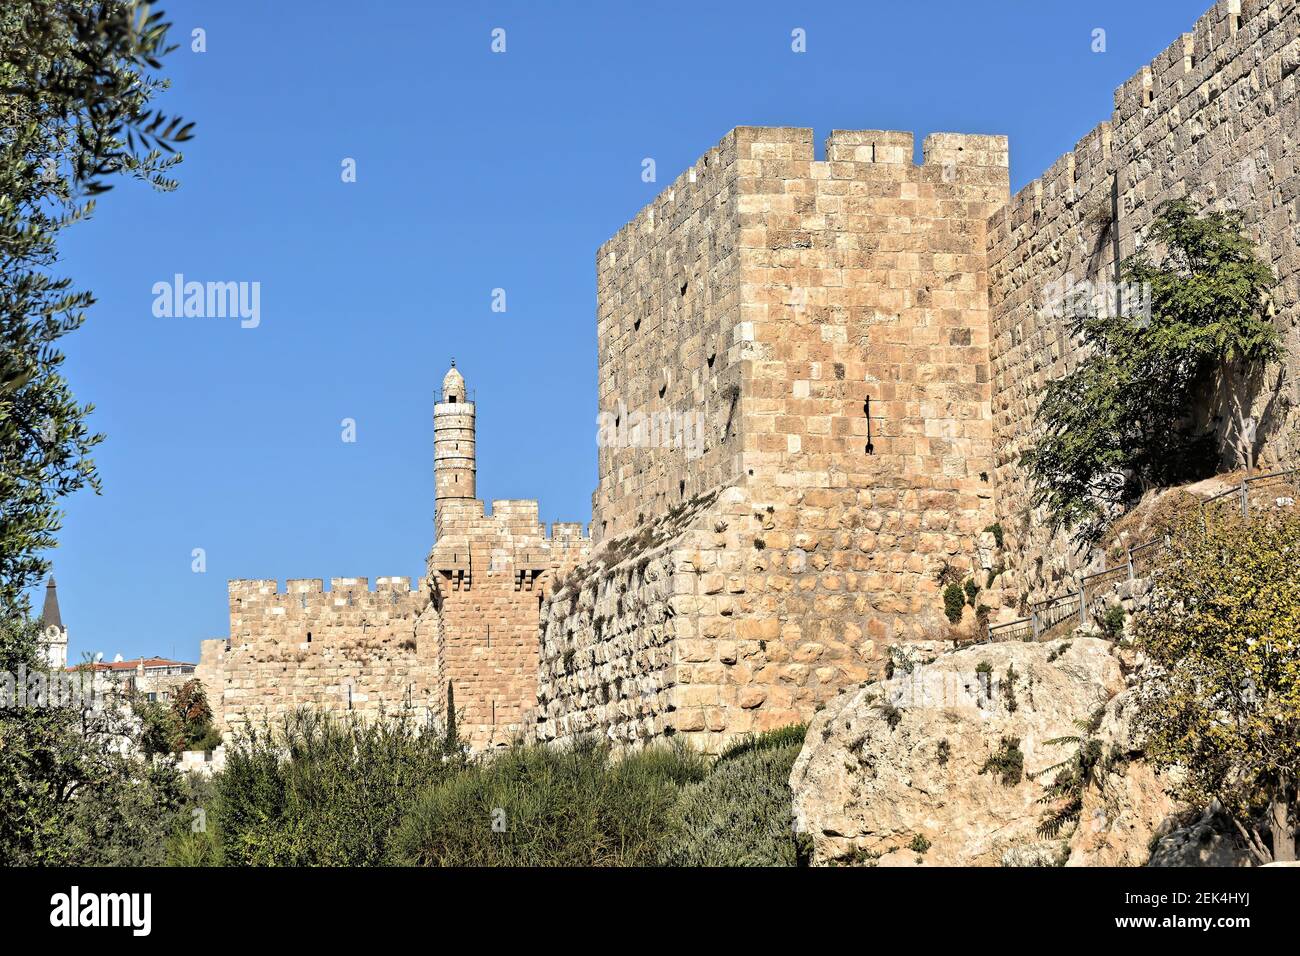 Muro occidental de la Ciudad Vieja de Jerusalén. Una muralla del siglo XVI construida por Suleiman el magnífico. Foto de stock